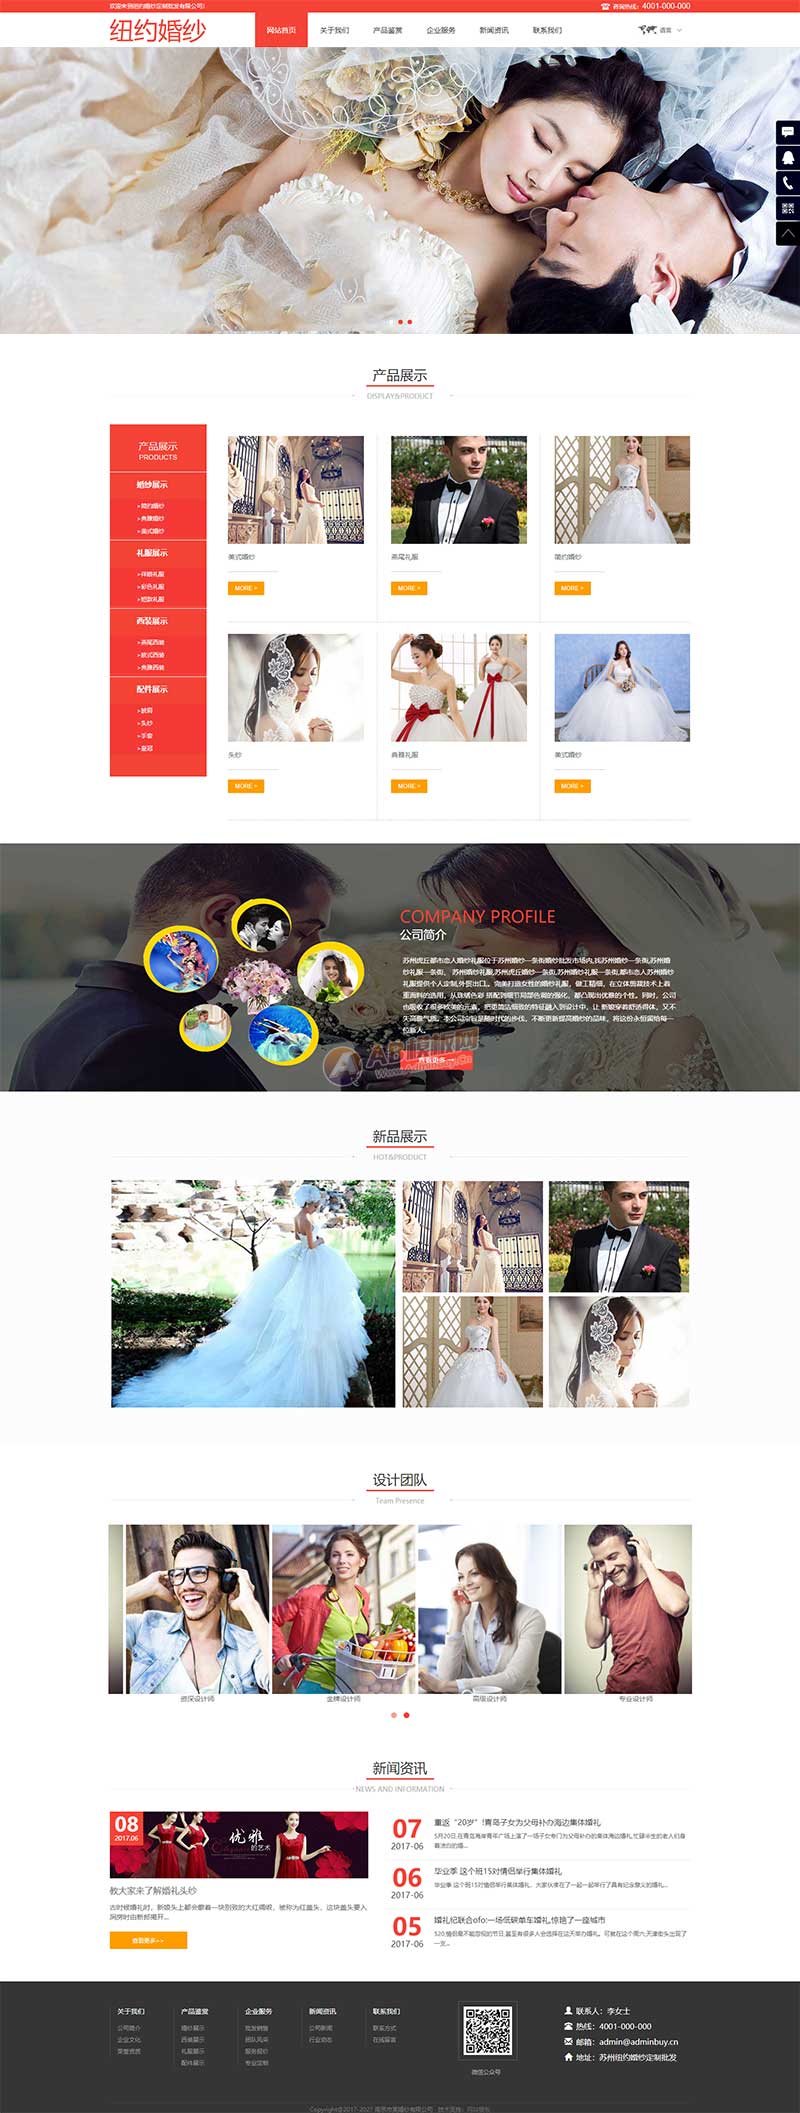 红色的婚纱摄影公司网站响应式静态html模板-推推论坛